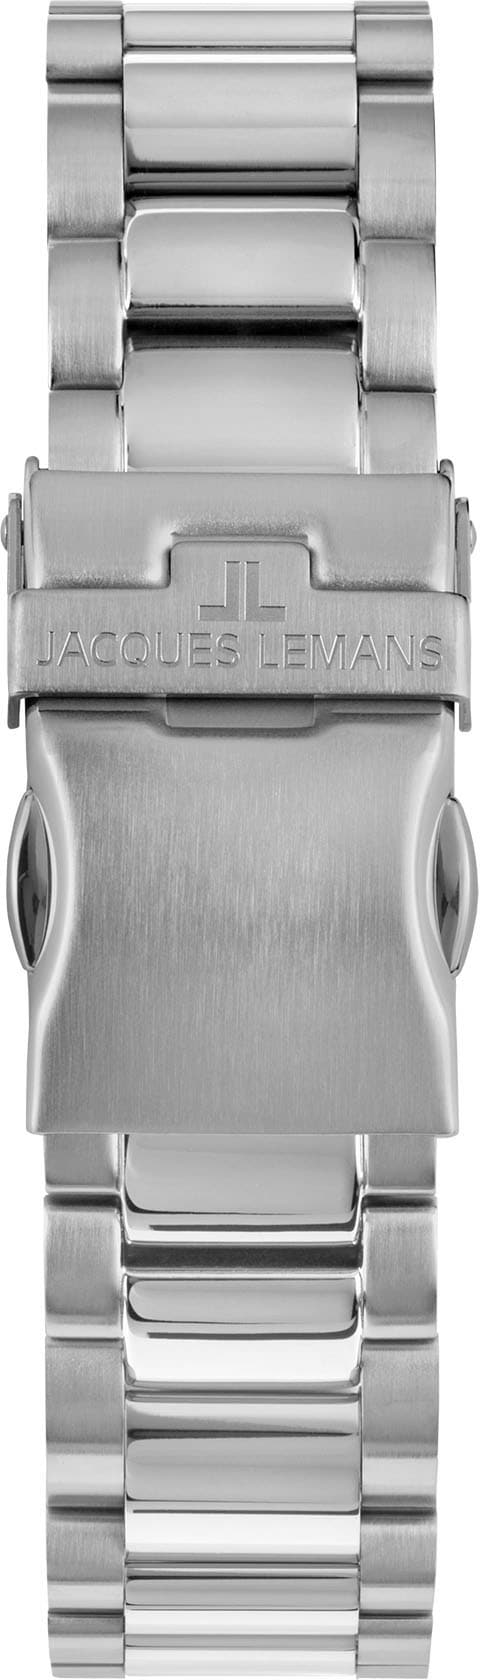 Jacques Lemans Chronograph »Liverpool, 1-2140K«